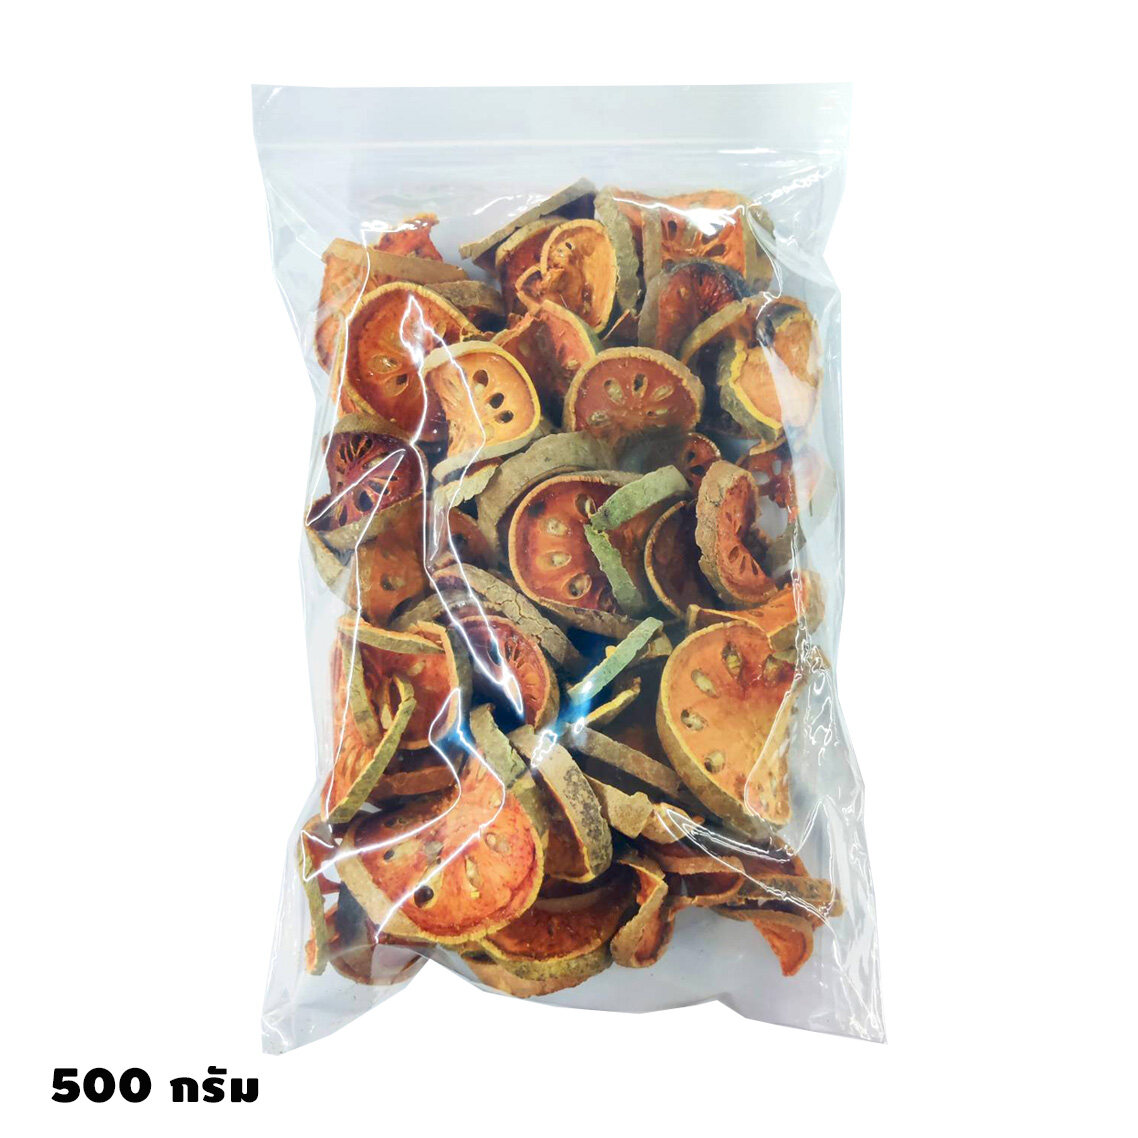 มะตูม มะตูมอบแห้ง 500 กรัม / 1 กิโลกรัม ให้ความสดชื่น มีสรรพคุณมากมาย Dried Bael Herbal Tea HealthyDaily Healthy Daily